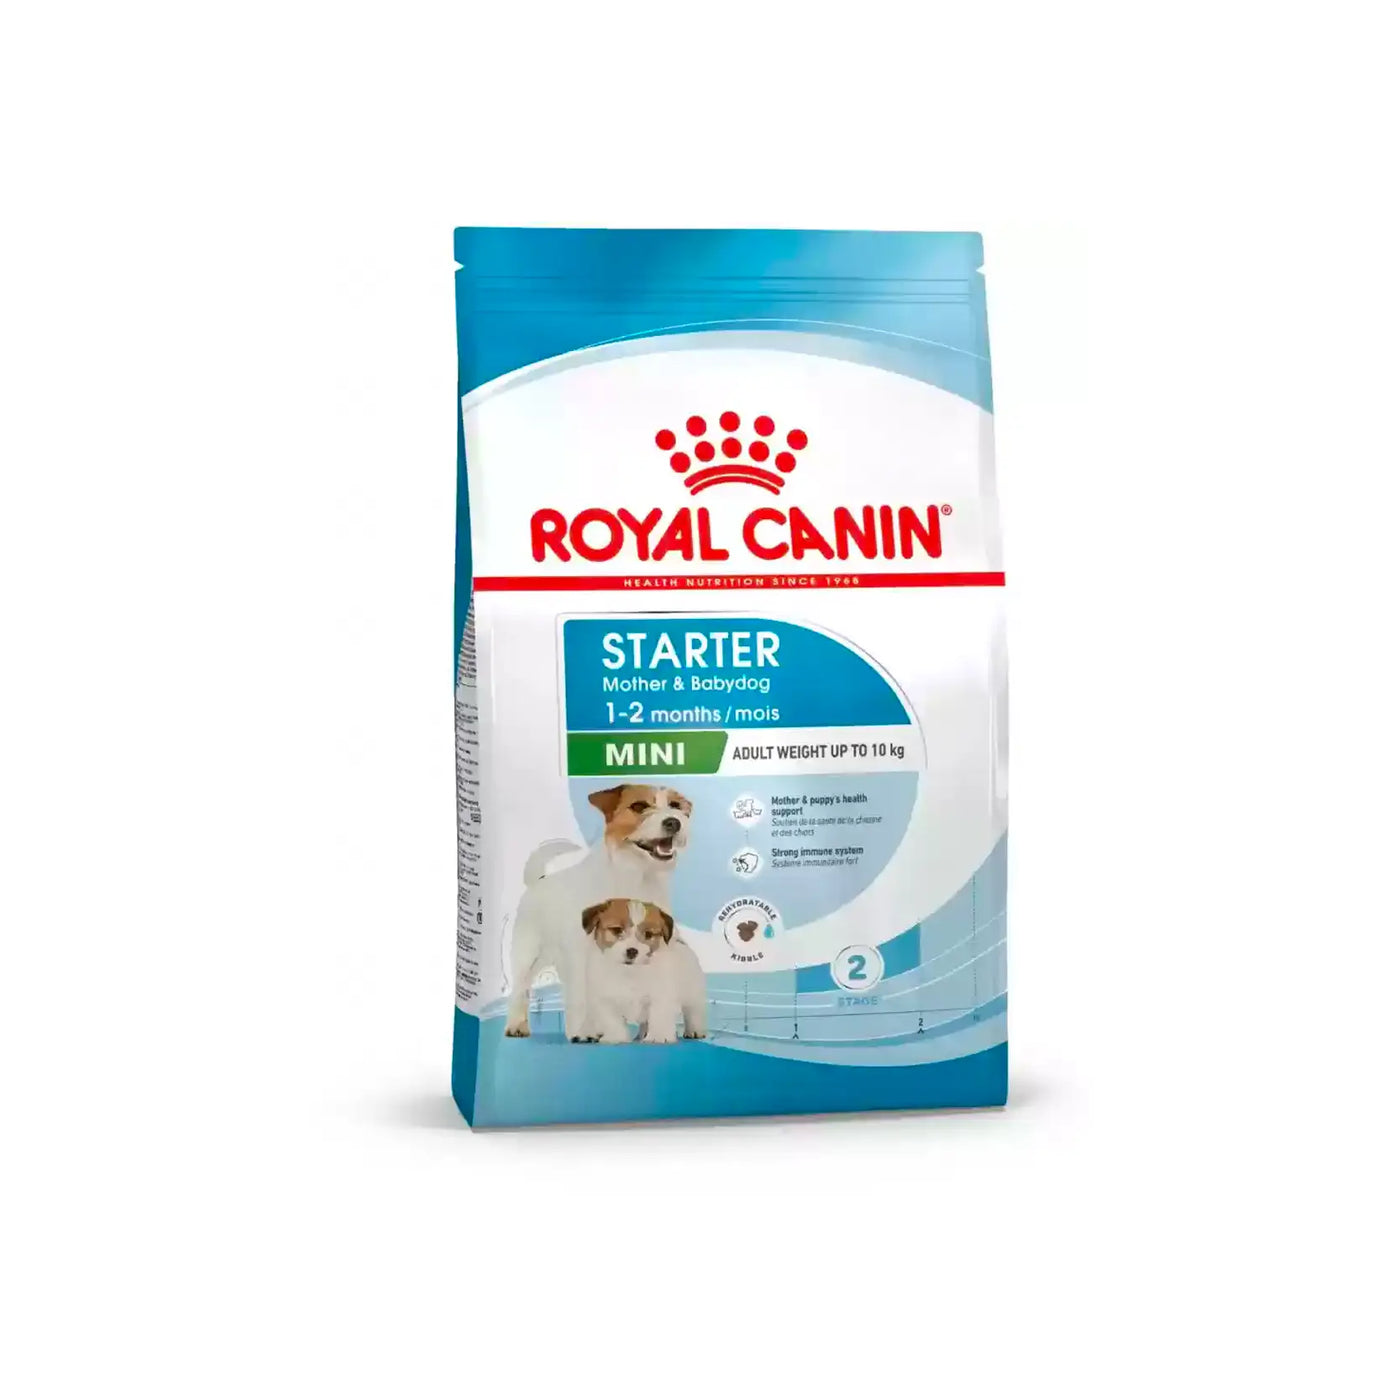 Royal Canin - Mini Starter Mother & Babydog Dry Food 3kg